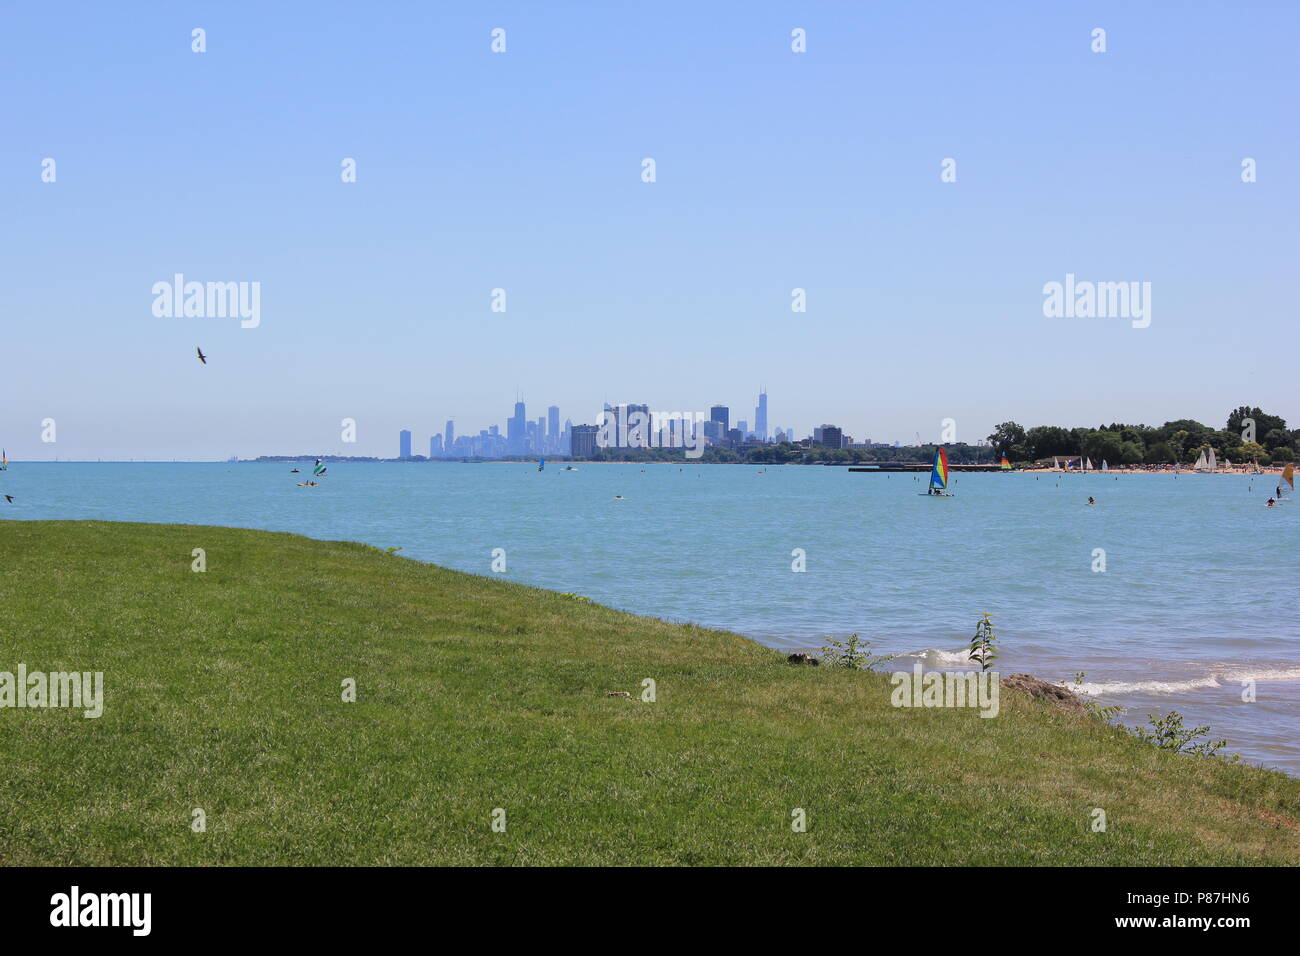 Northwestern University Park sur le lac à Evanston, Illinois sur une belle journée ensoleillée. Banque D'Images